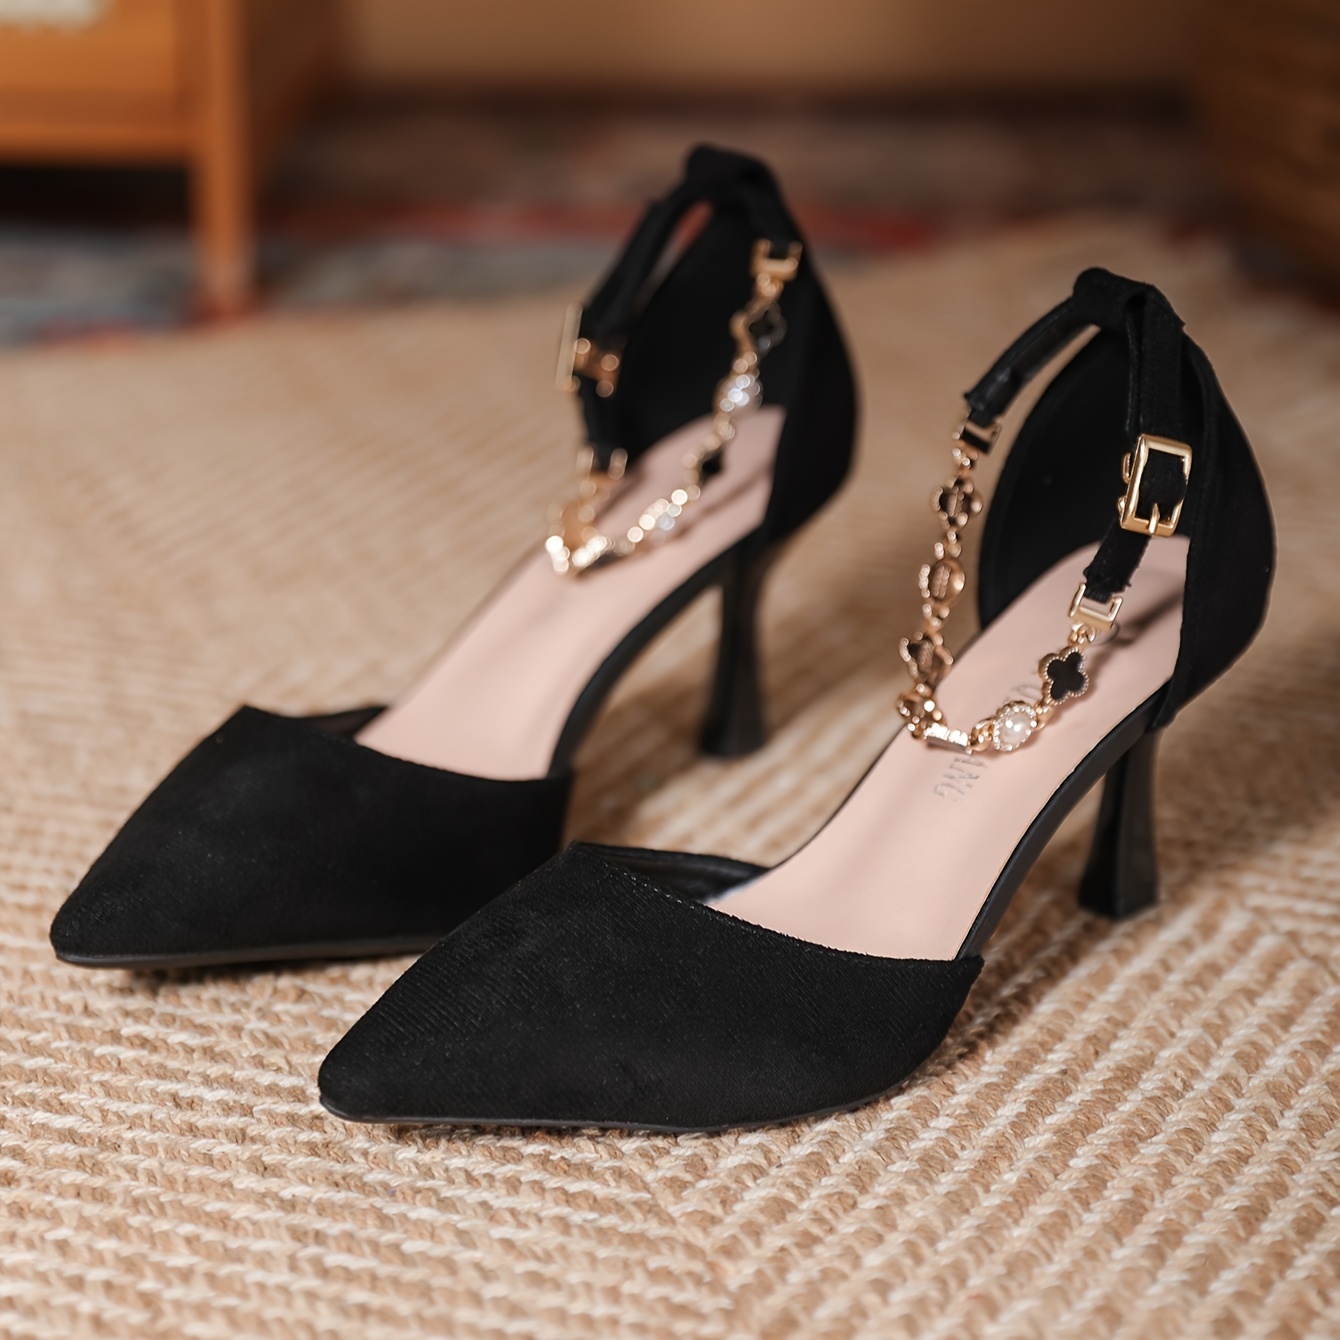 Zapatos Negros Del Tacón Alto Para La Mujer Imagen de archivo - Imagen de  fondo, elegancia: 51658545